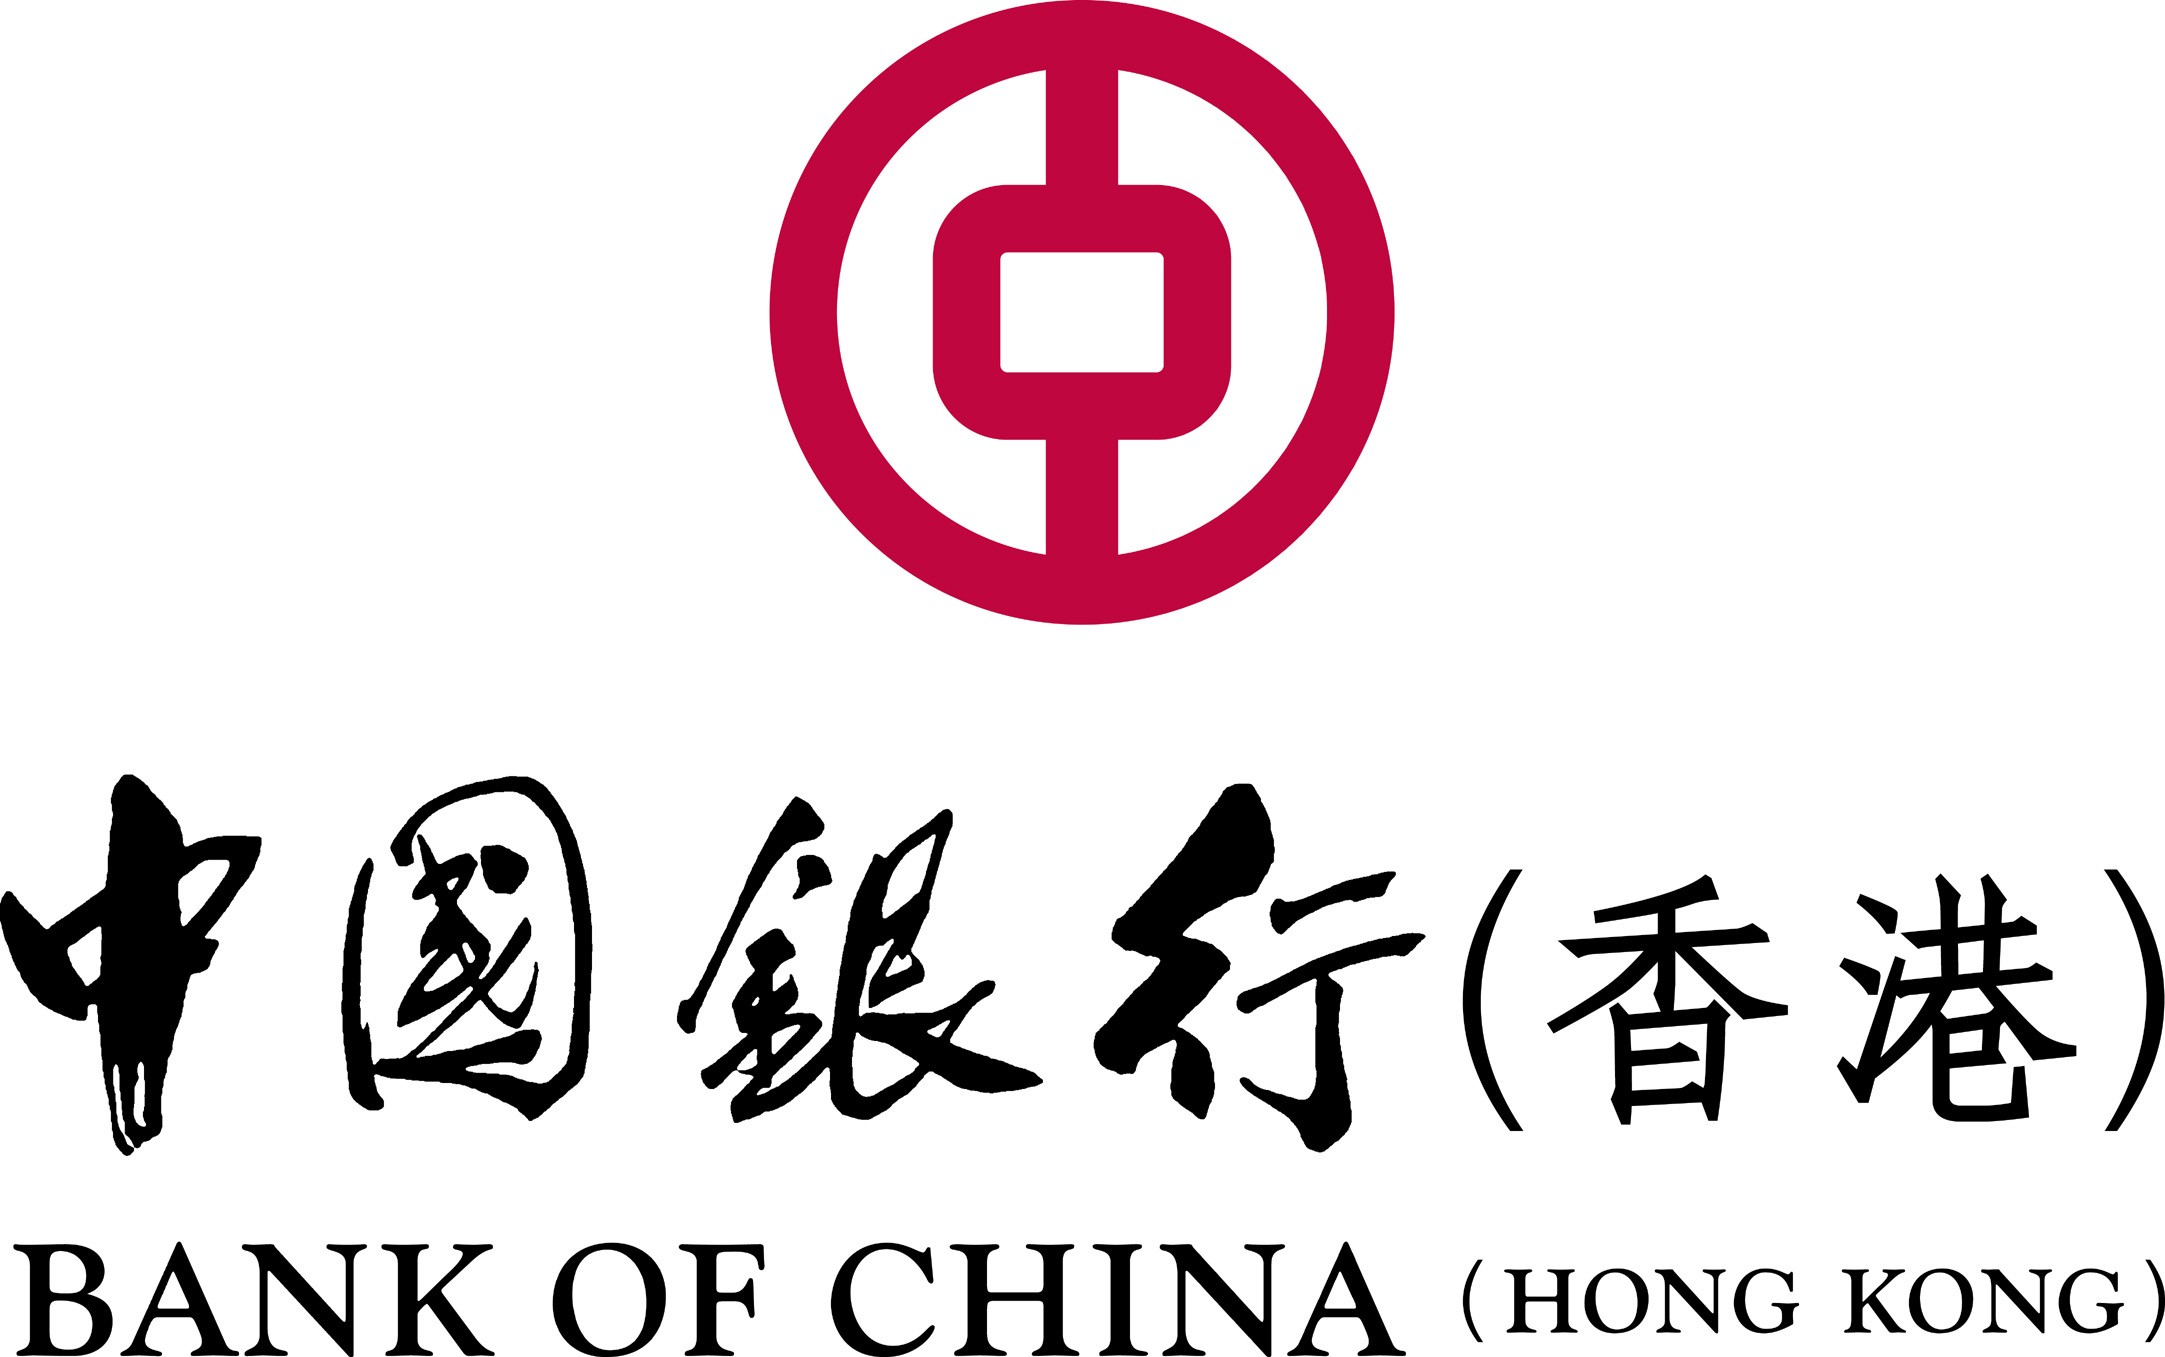 BANK OF CHINA (HONG KONG) LIMITED